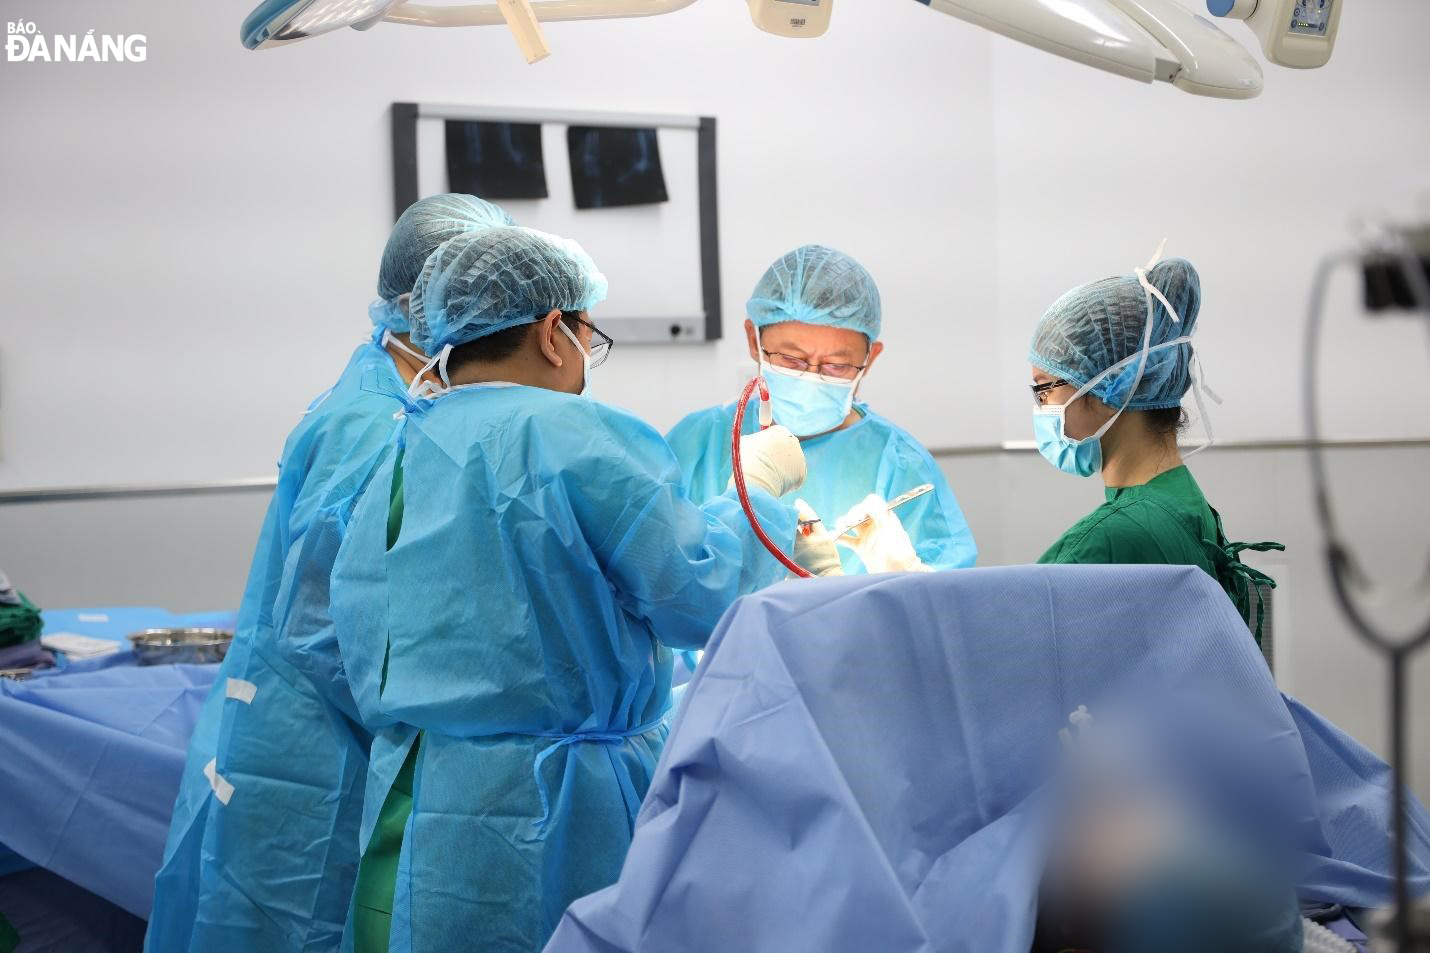 Ca phẫu thuật thay khớp gối được thực hiện bởi Tiến sĩ, bác sĩ Tăng Hà Nam Anh và ekip Bệnh viện Gia Đình. Ảnh: L.H